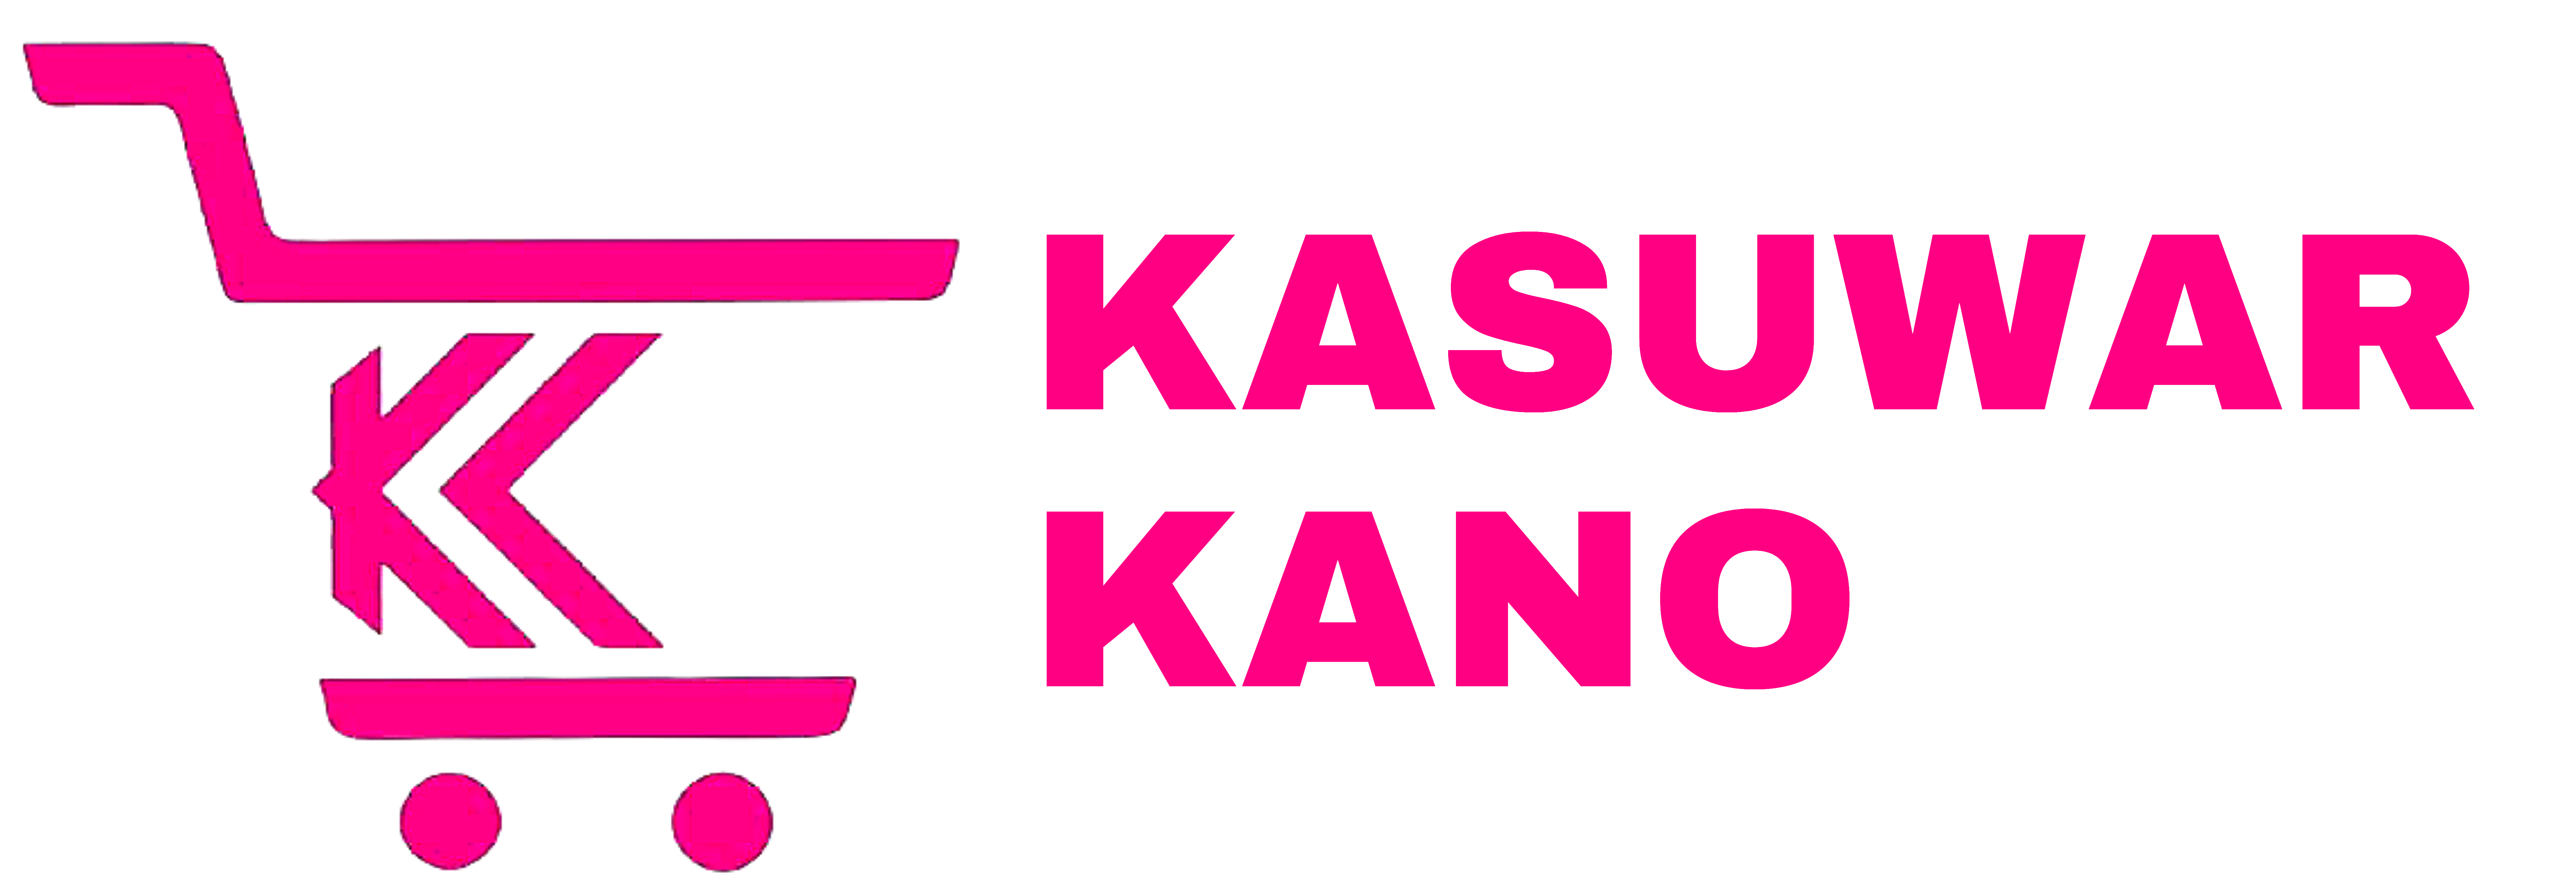 Kasuwar Kano